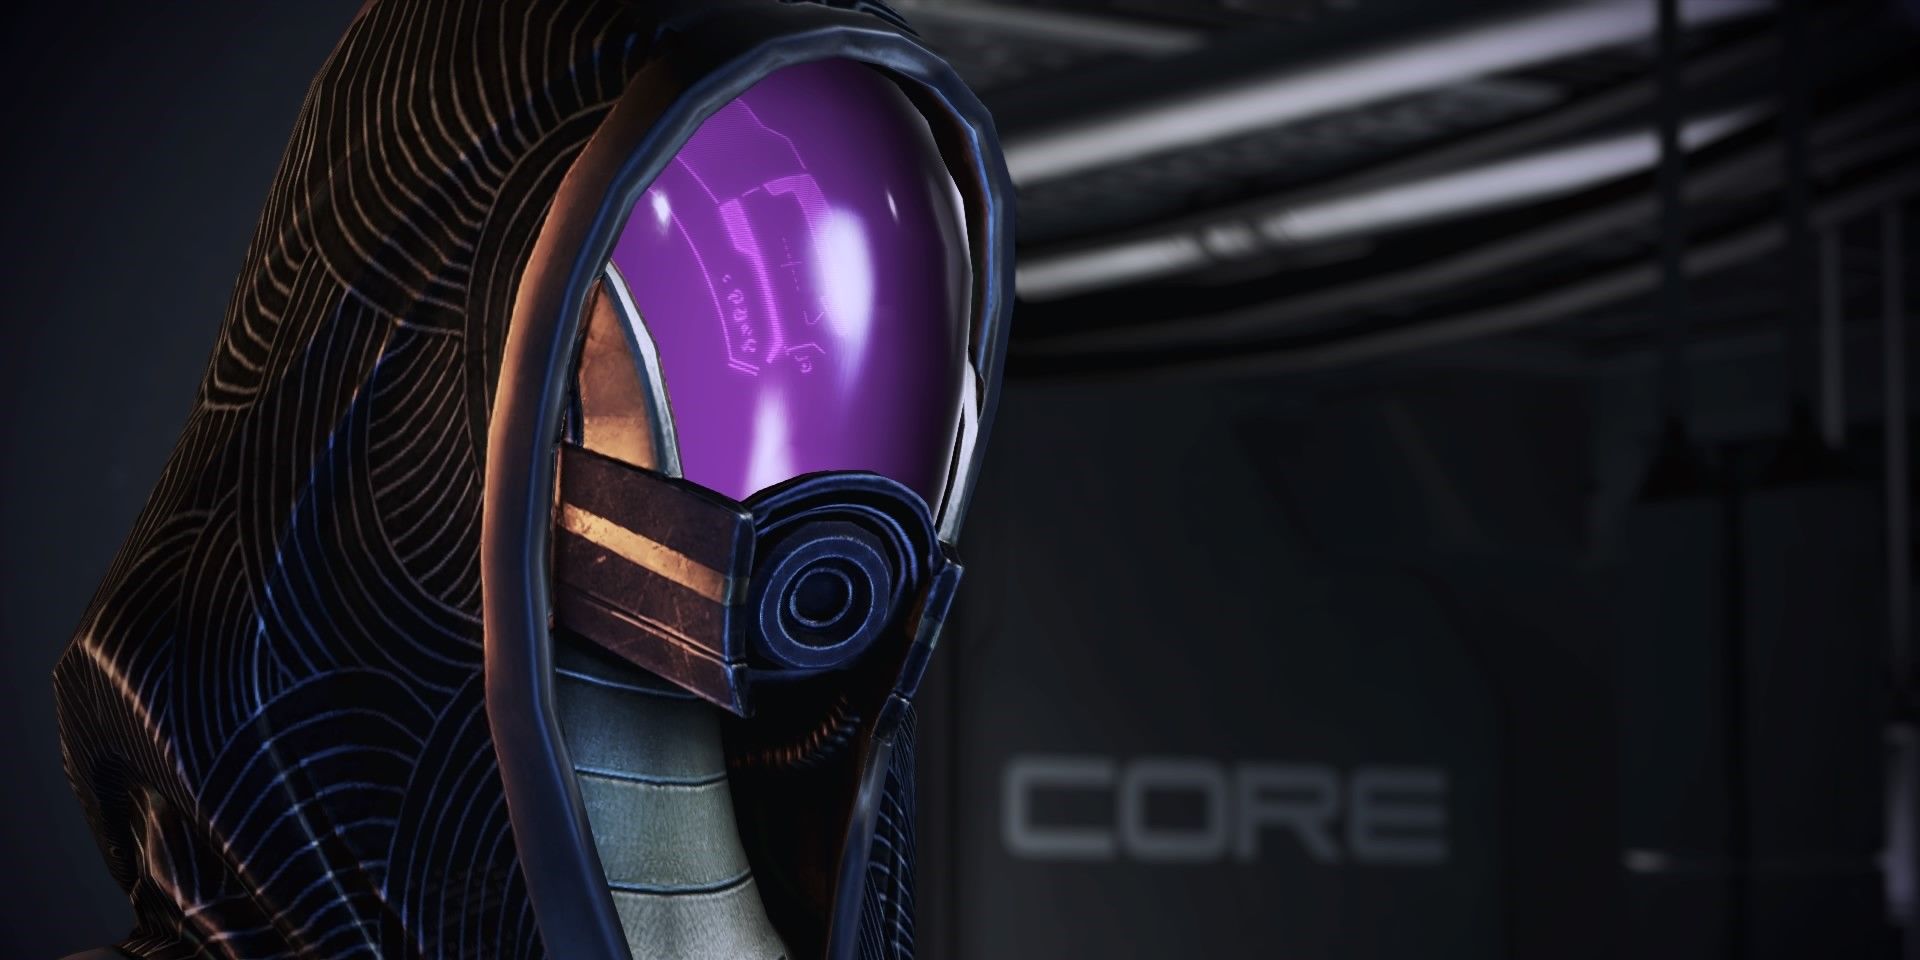 Tali in Mass Effect 2